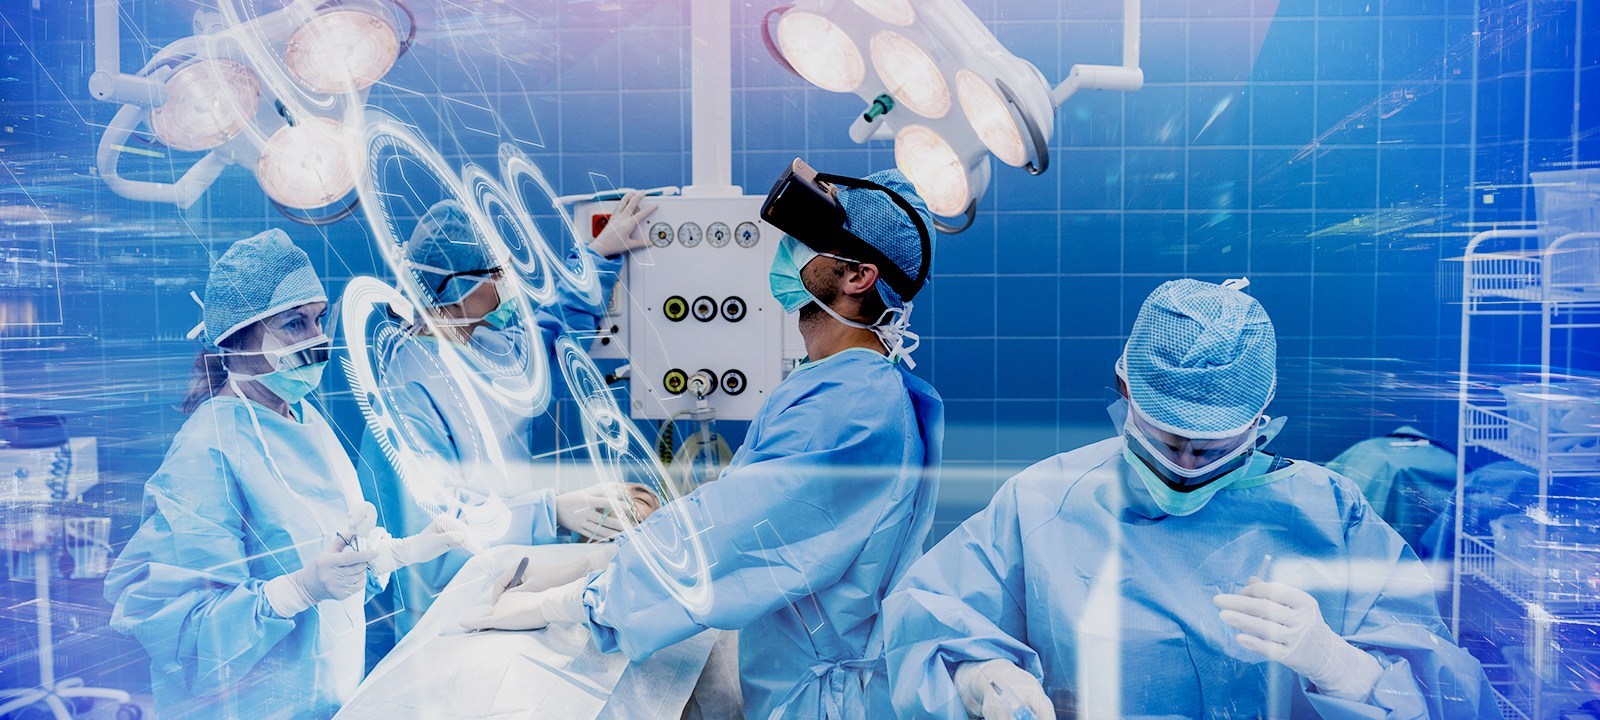 图片展示了手术室内的情景，医生和护士们正忙碌着，他们穿着蓝色的手术服，专注于进行手术操作。